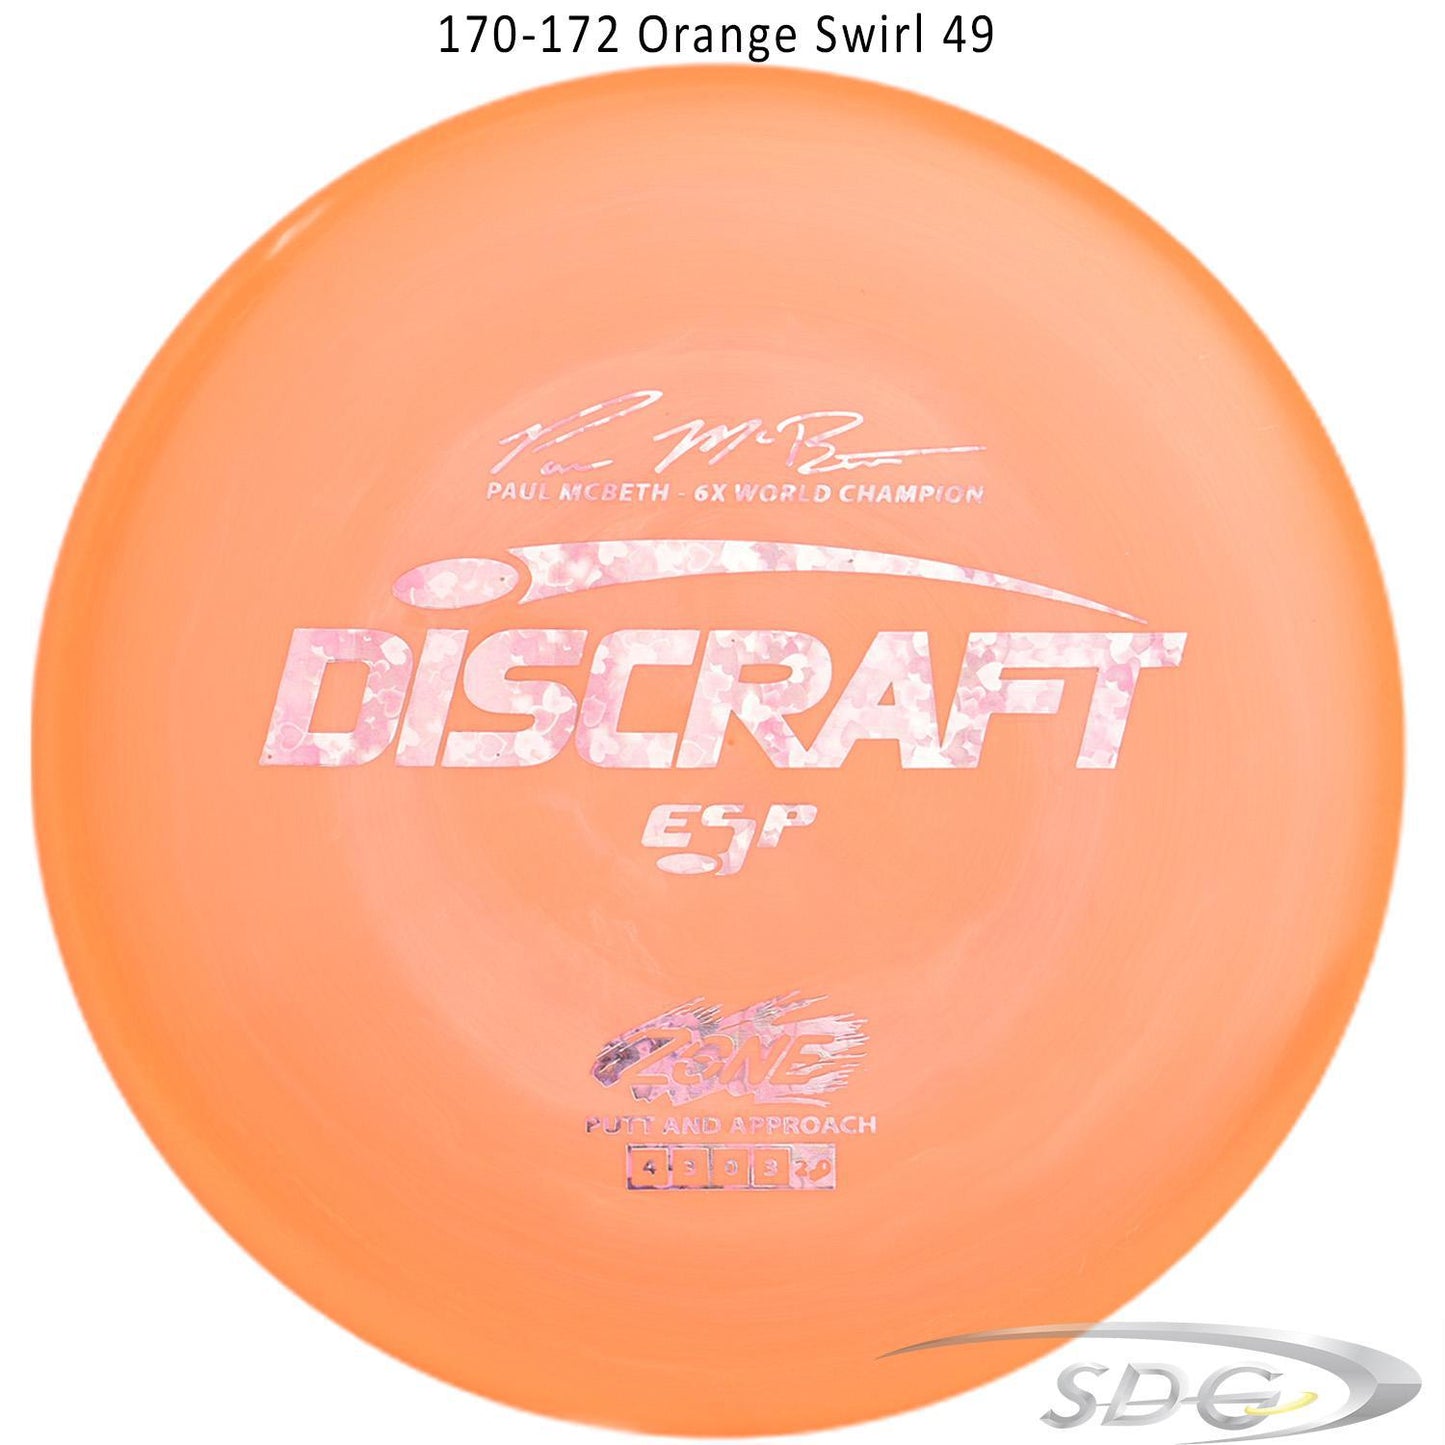 discraft-esp-zone-6x-paul-mcbeth-signature-series-disc-golf-putter 170-172 Orange Swirl 49